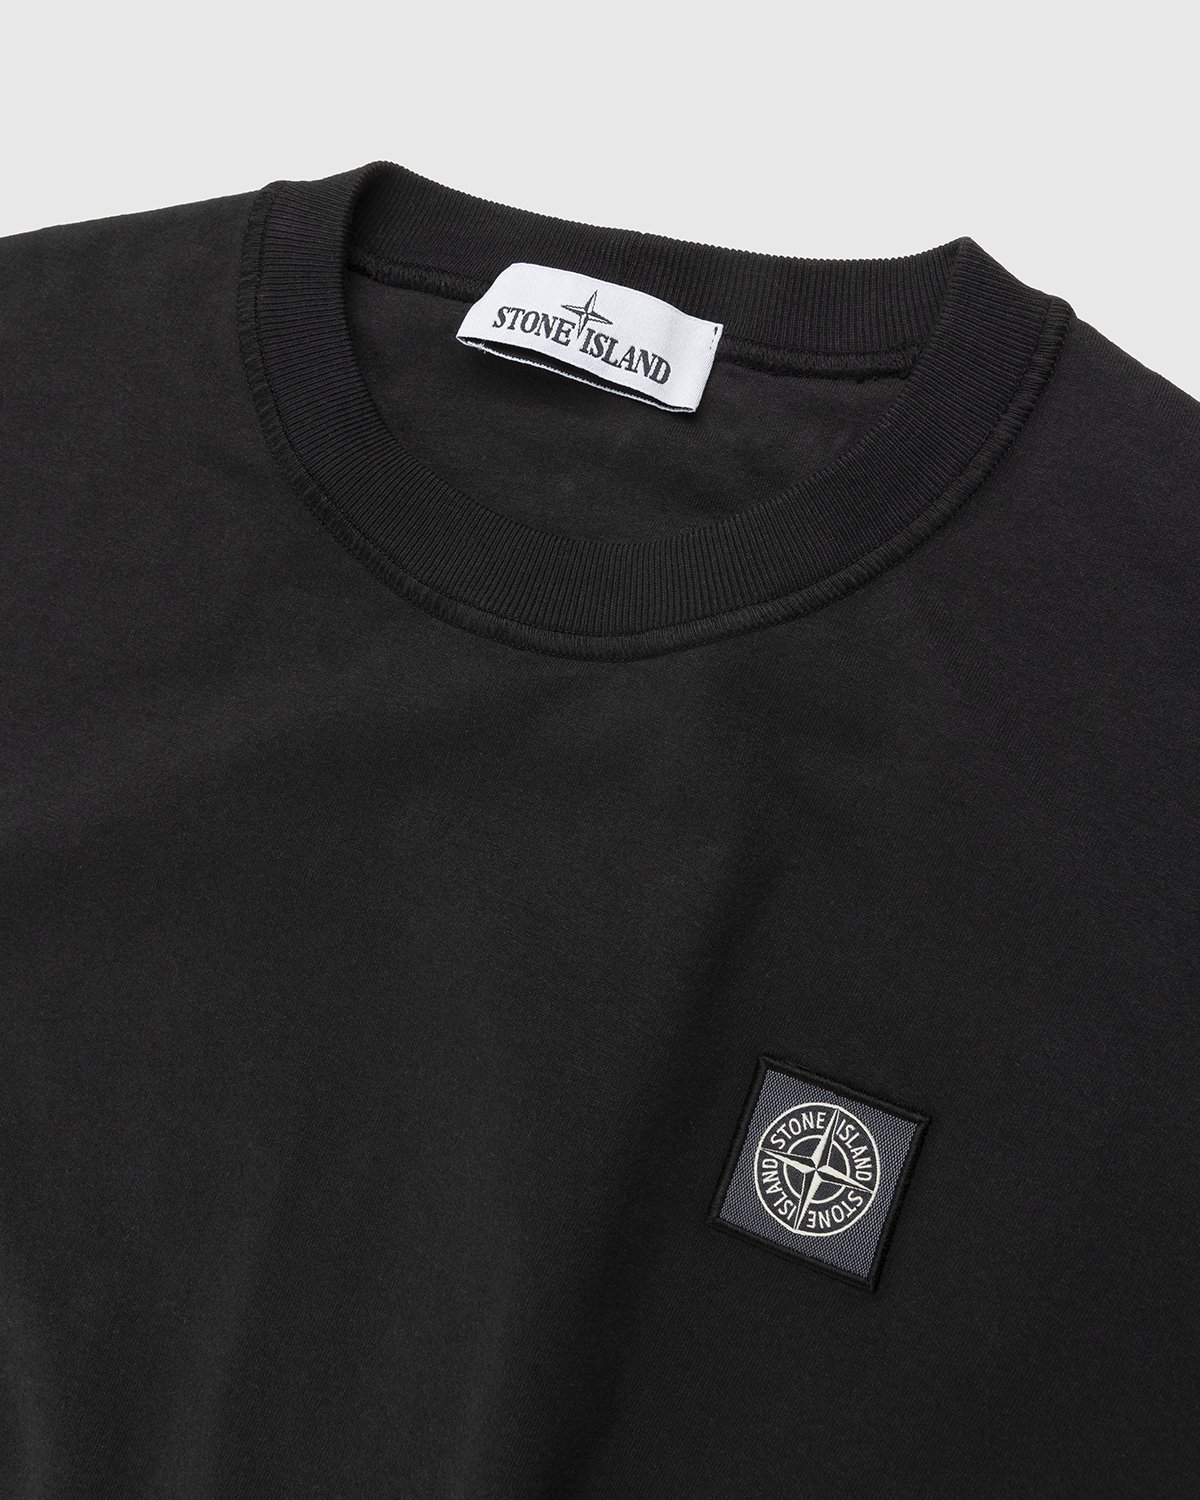 Stone Island - 23757 Garment-Dyed Fissato T-Shirt Black - Clothing - Black - Image 4